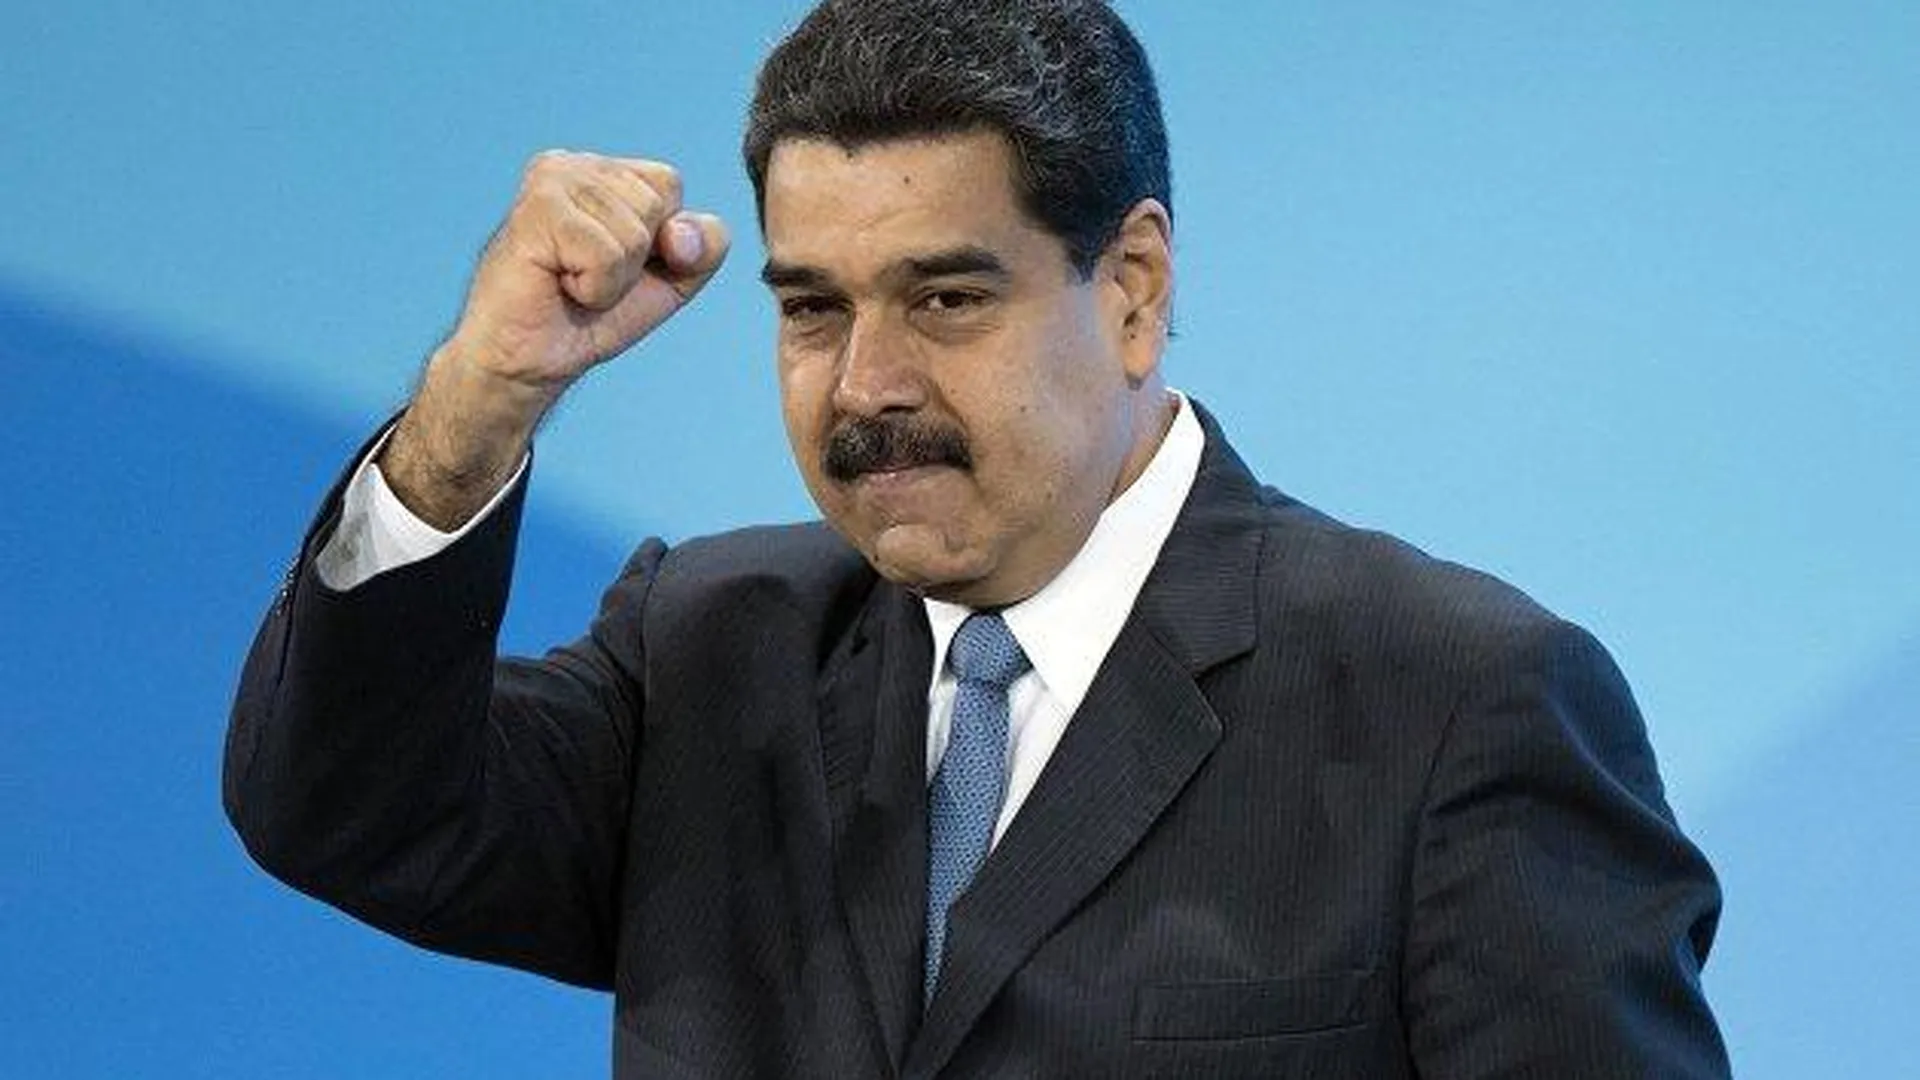 «Предлагаю пойти к черту». Мадуро ответил на угрозы представителя Госдепа о санкциях